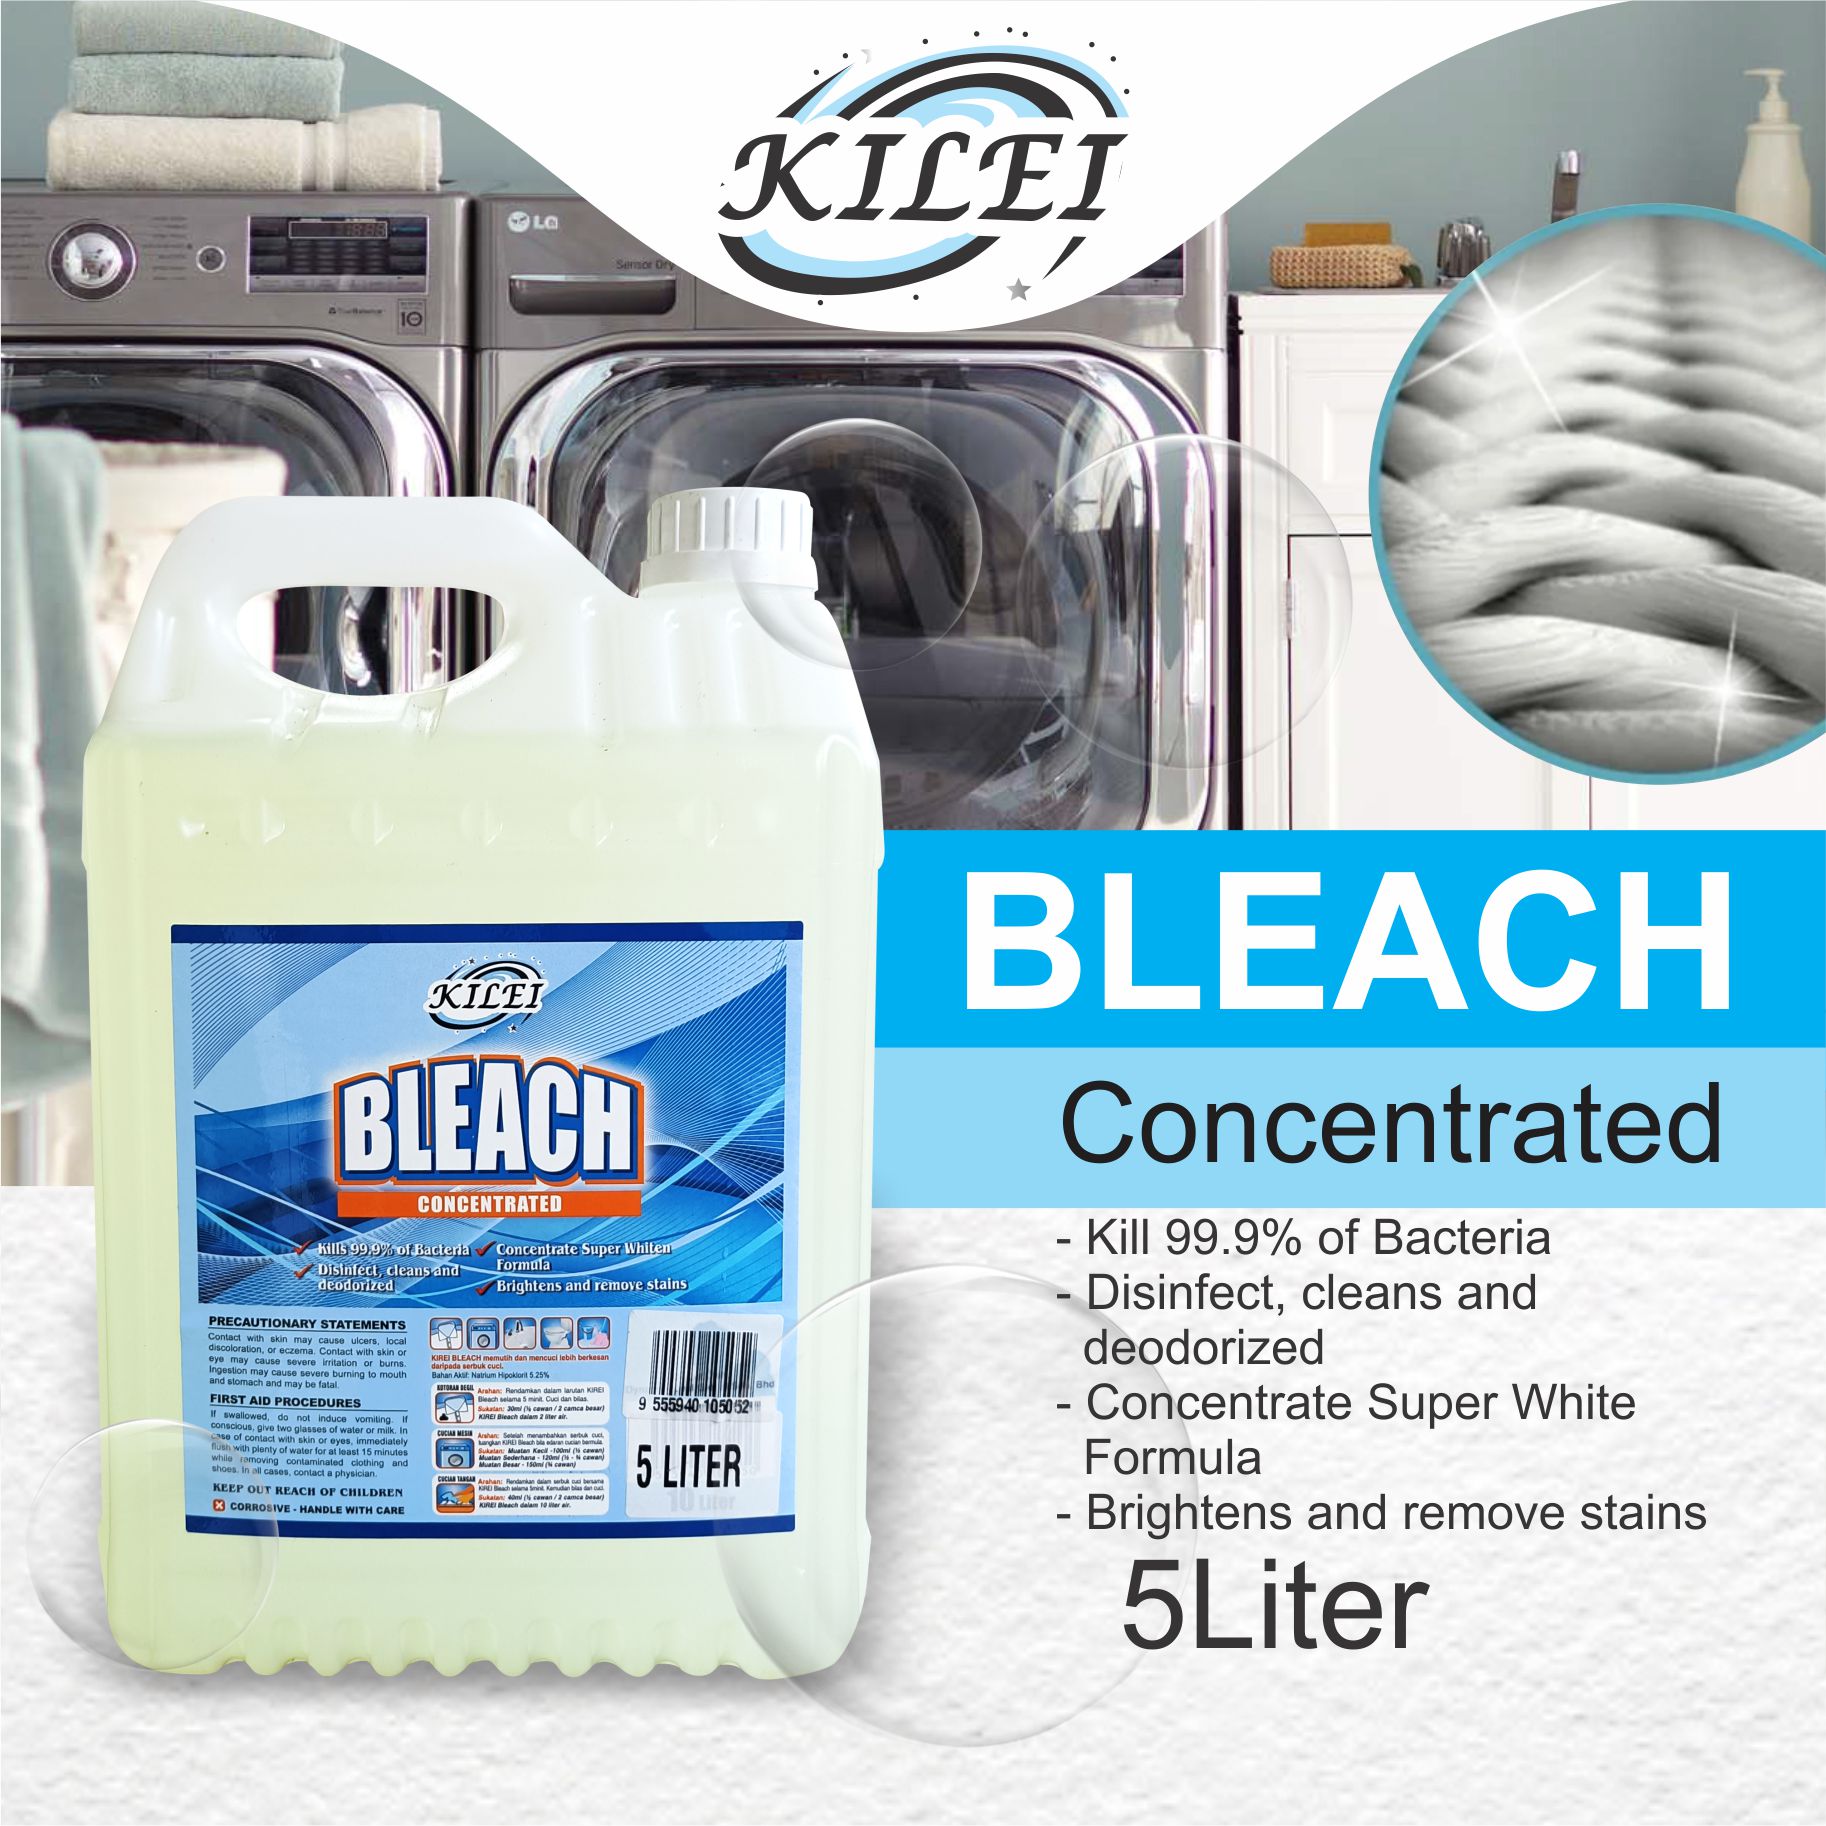 Kilei Bleach [Concentrated]Liquid – 5liter